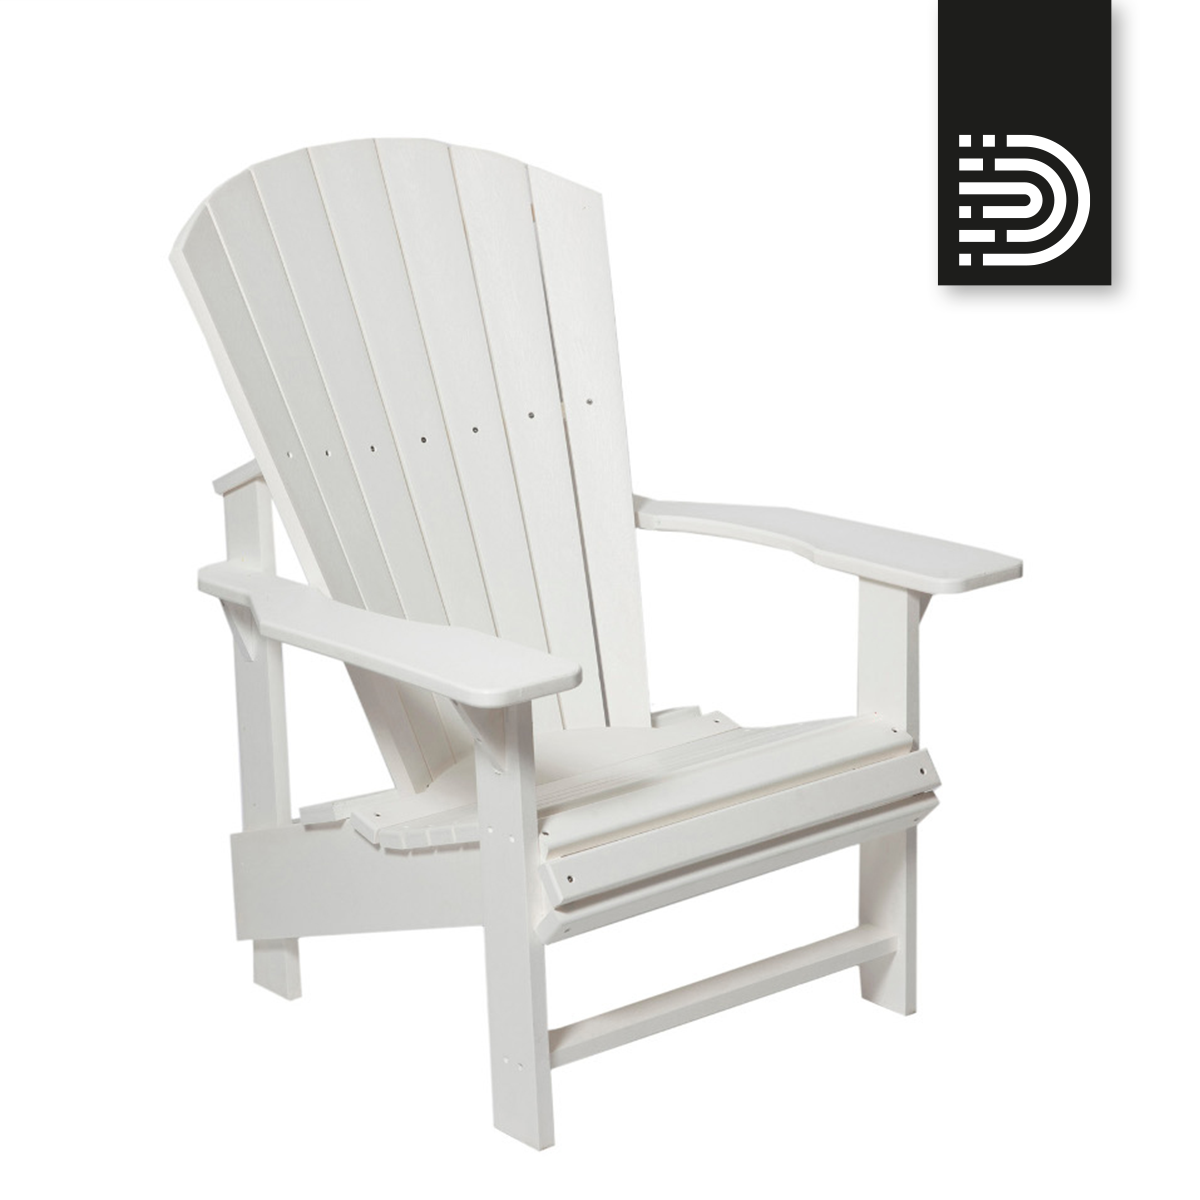 C03 Upright Adirondack Chair - white 02